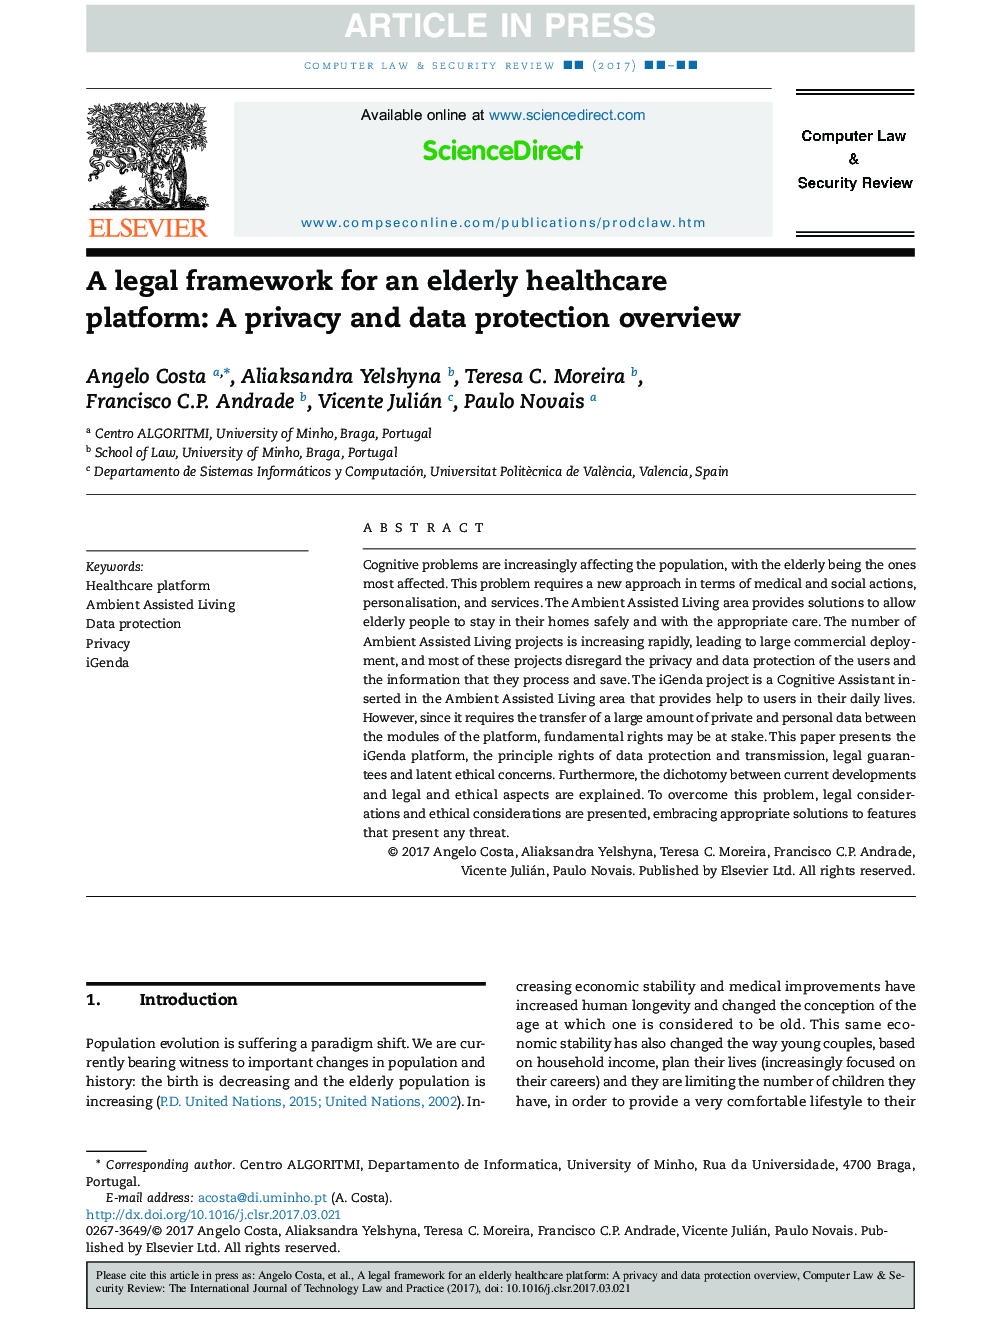 یک چارچوب قانونی برای یک پلت فرم مراقبت سالم سالمندان: یک نظرسنجی حفظ حریم خصوصی و اطلاعات 